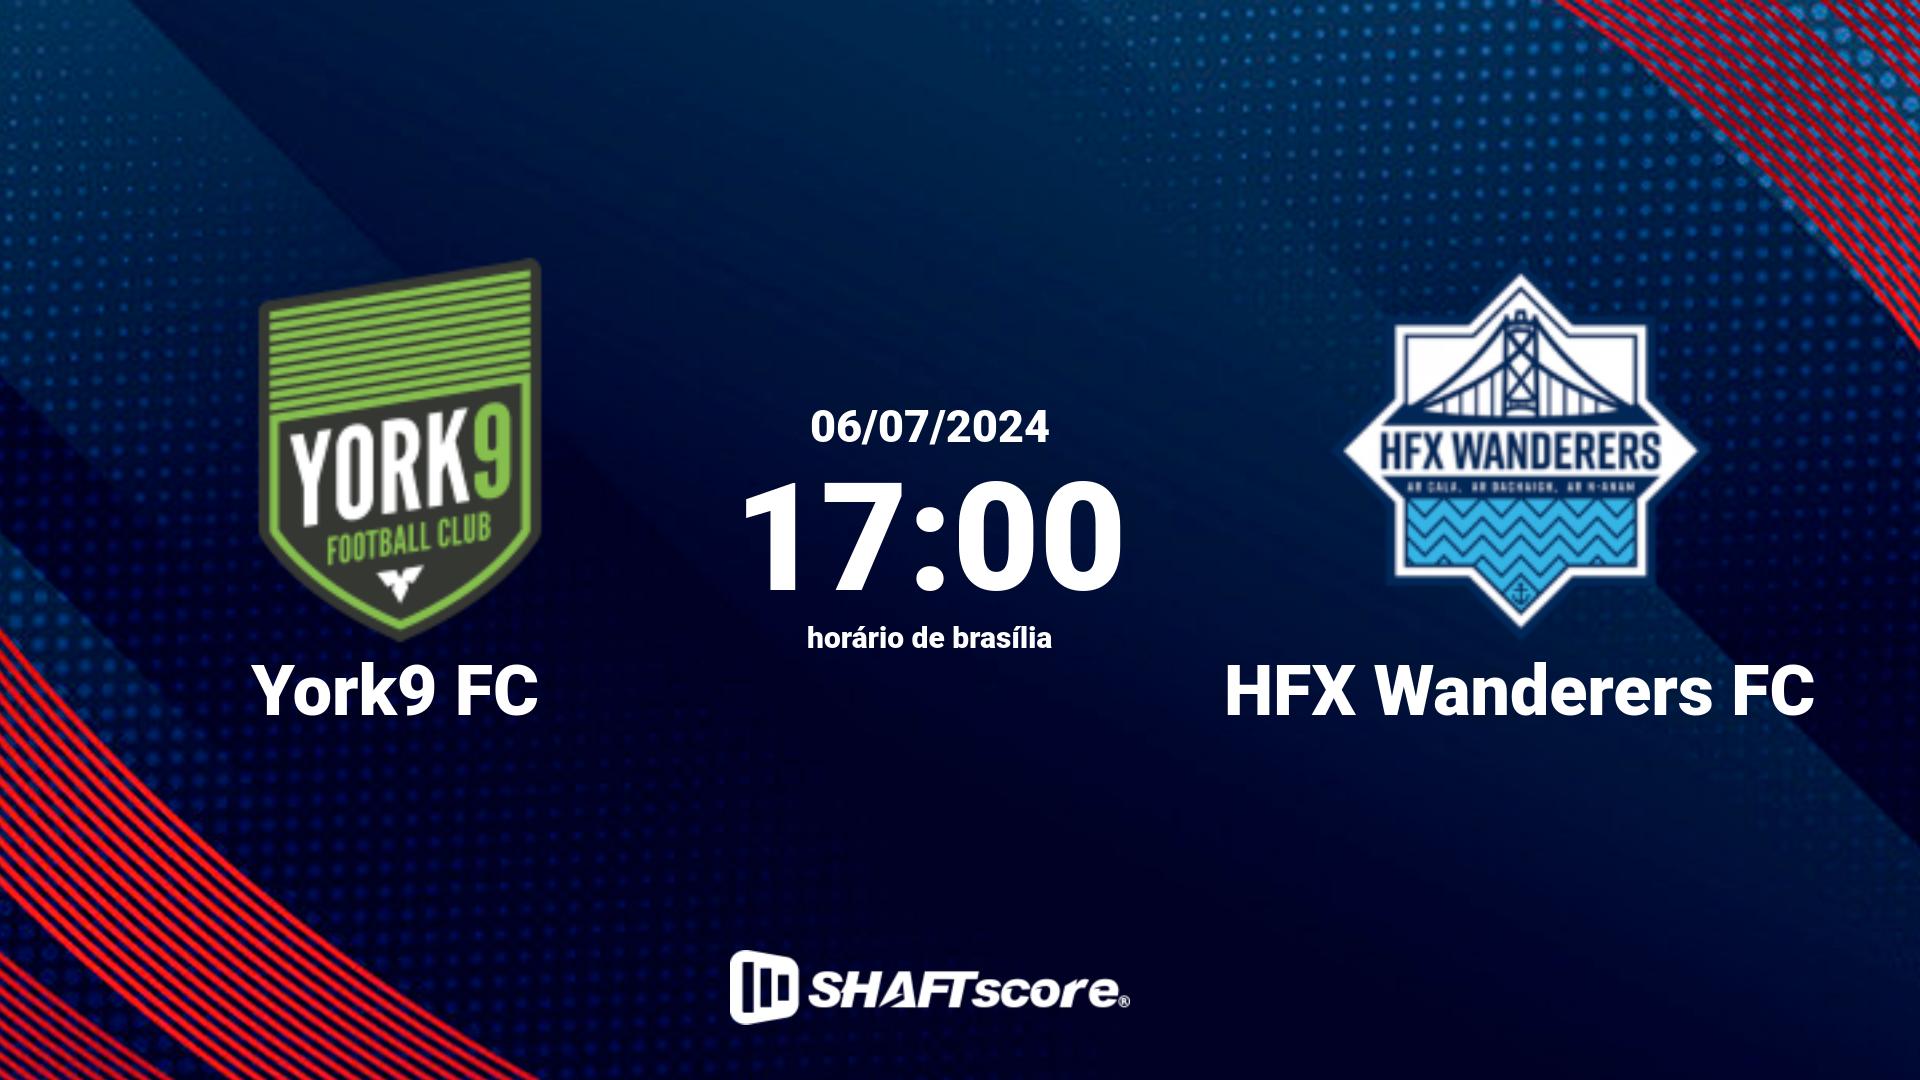 Estatísticas do jogo York9 FC vs HFX Wanderers FC 06.07 17:00